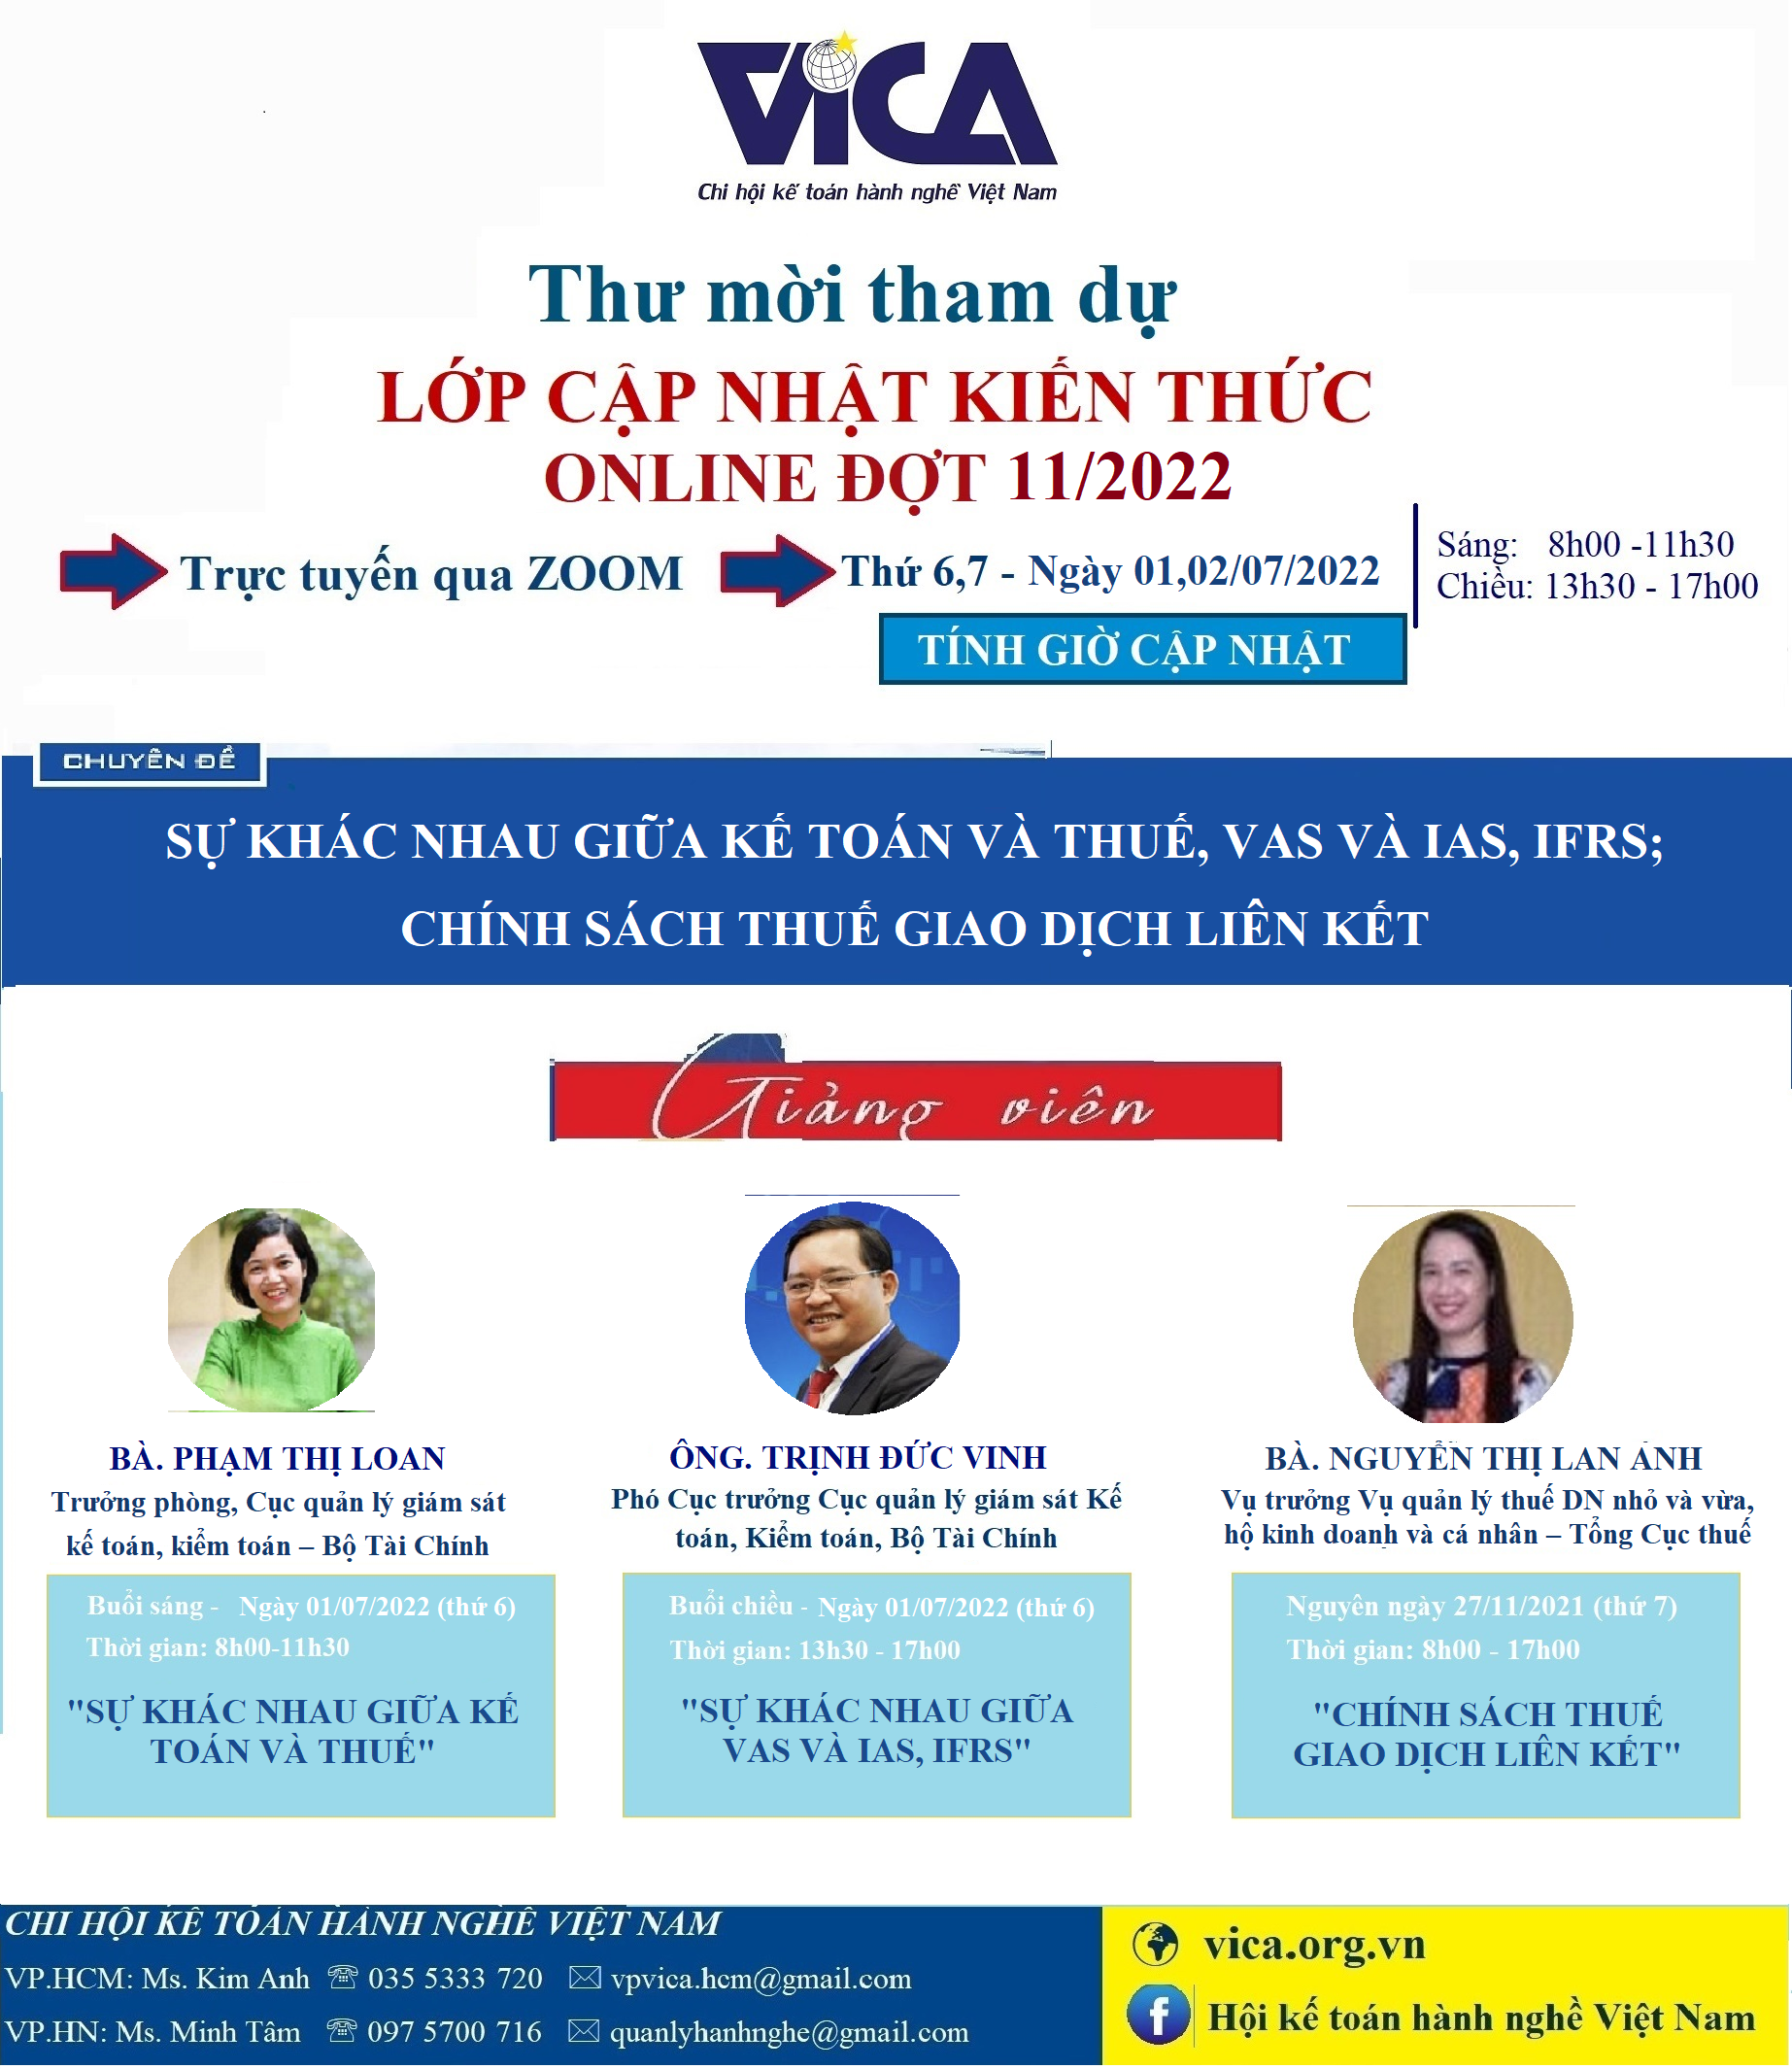 Thư mời lop CNKT dot 11 - Online trang 1